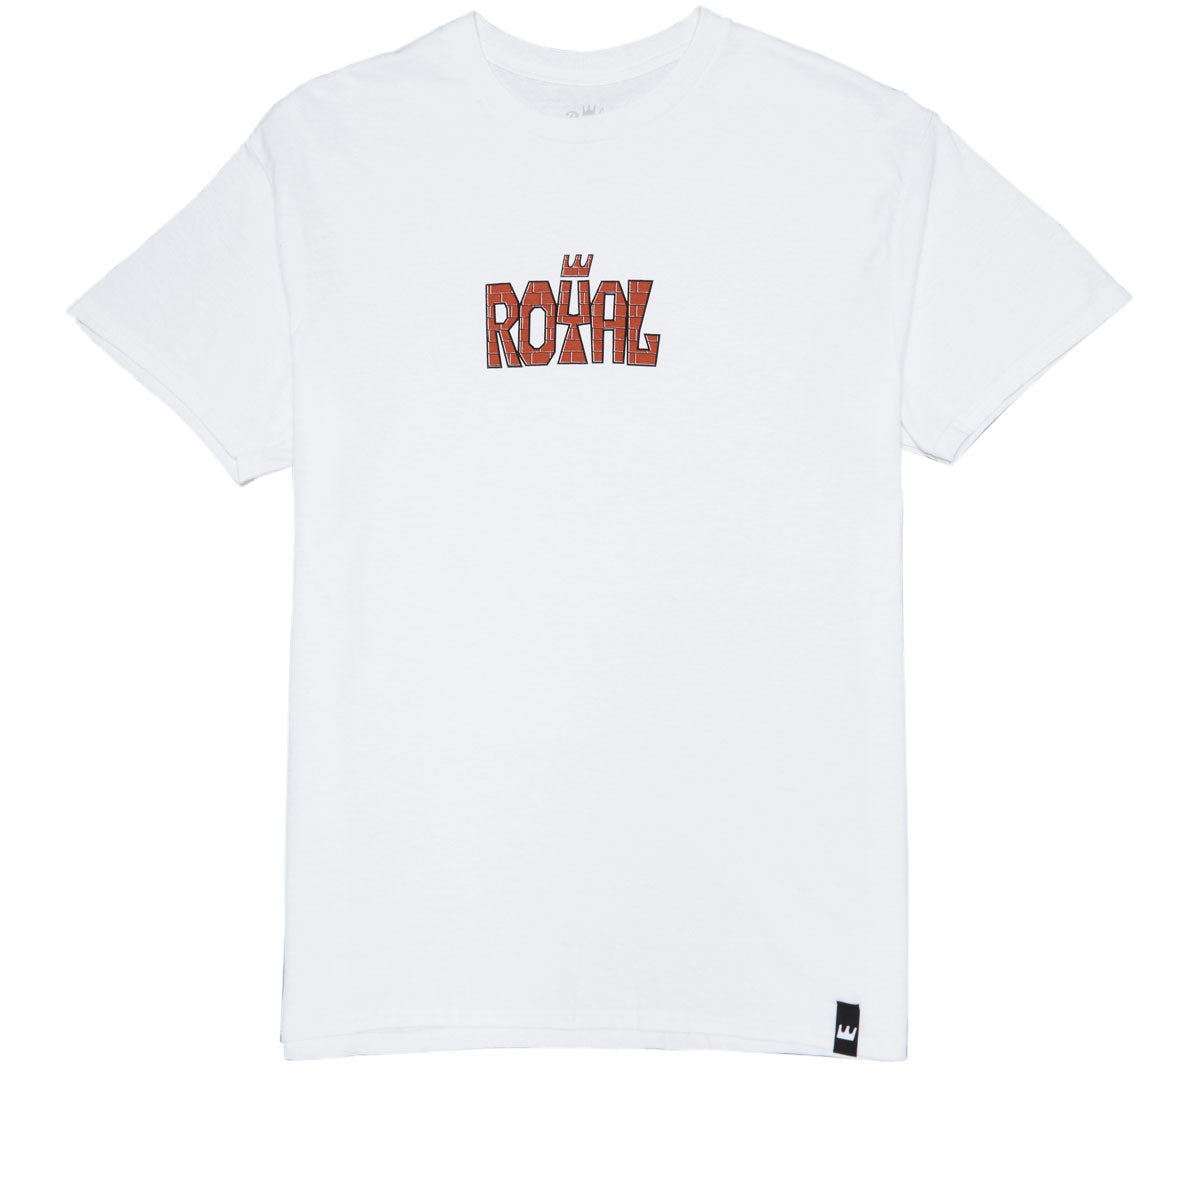 Royal Doggy T-Shirt - White image 1